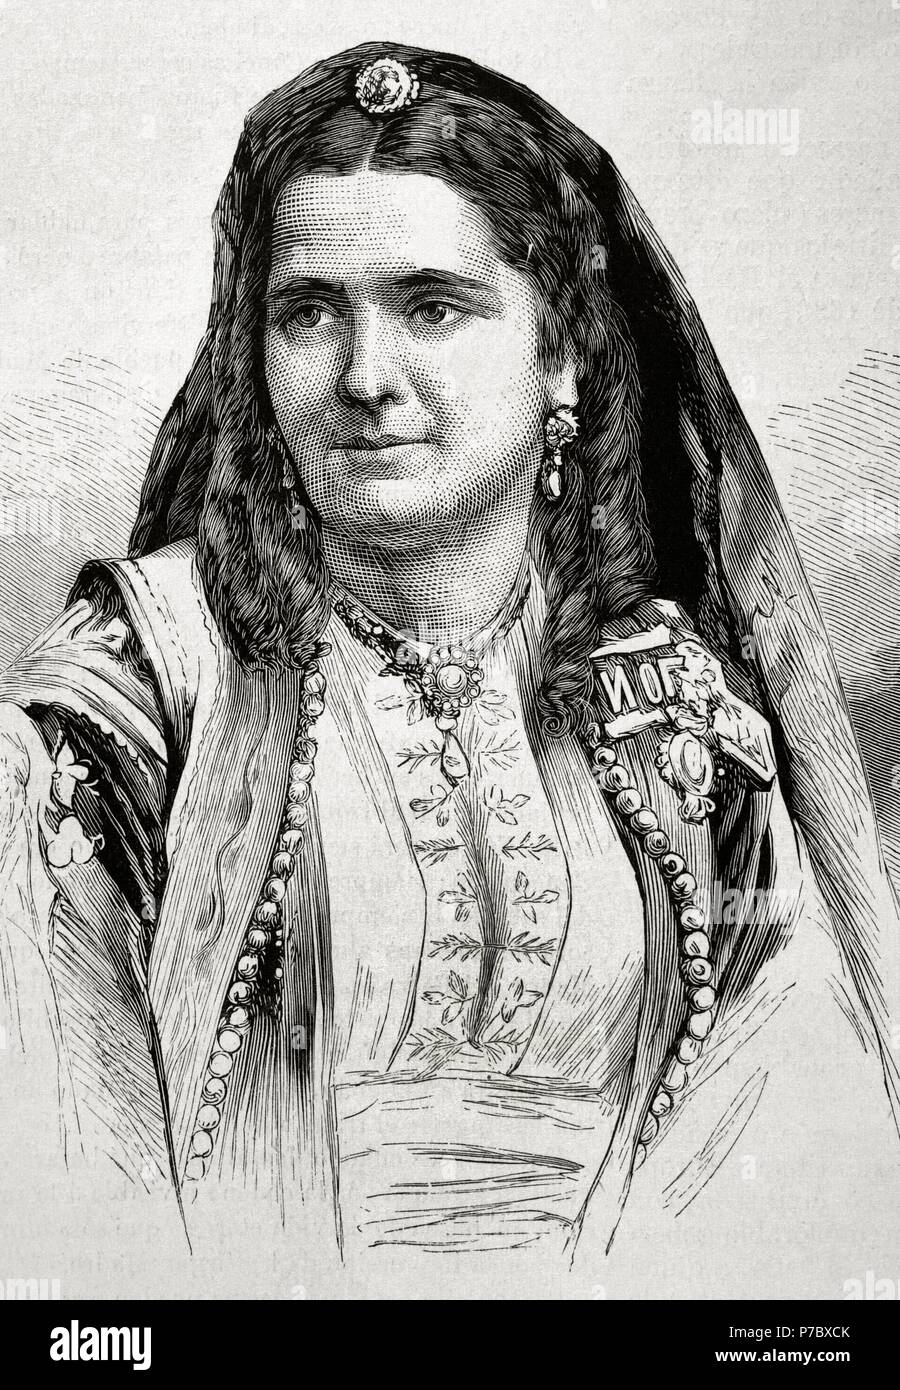 Milena Vukotic (1847-1923). Queen Consort of Montenegro, as wife of King Nicholas I of Montenegro (1920-1918). Portrait. Engraved by Paris in 'La Ilustracio n espan ola y americana', 1875. Stock Photo